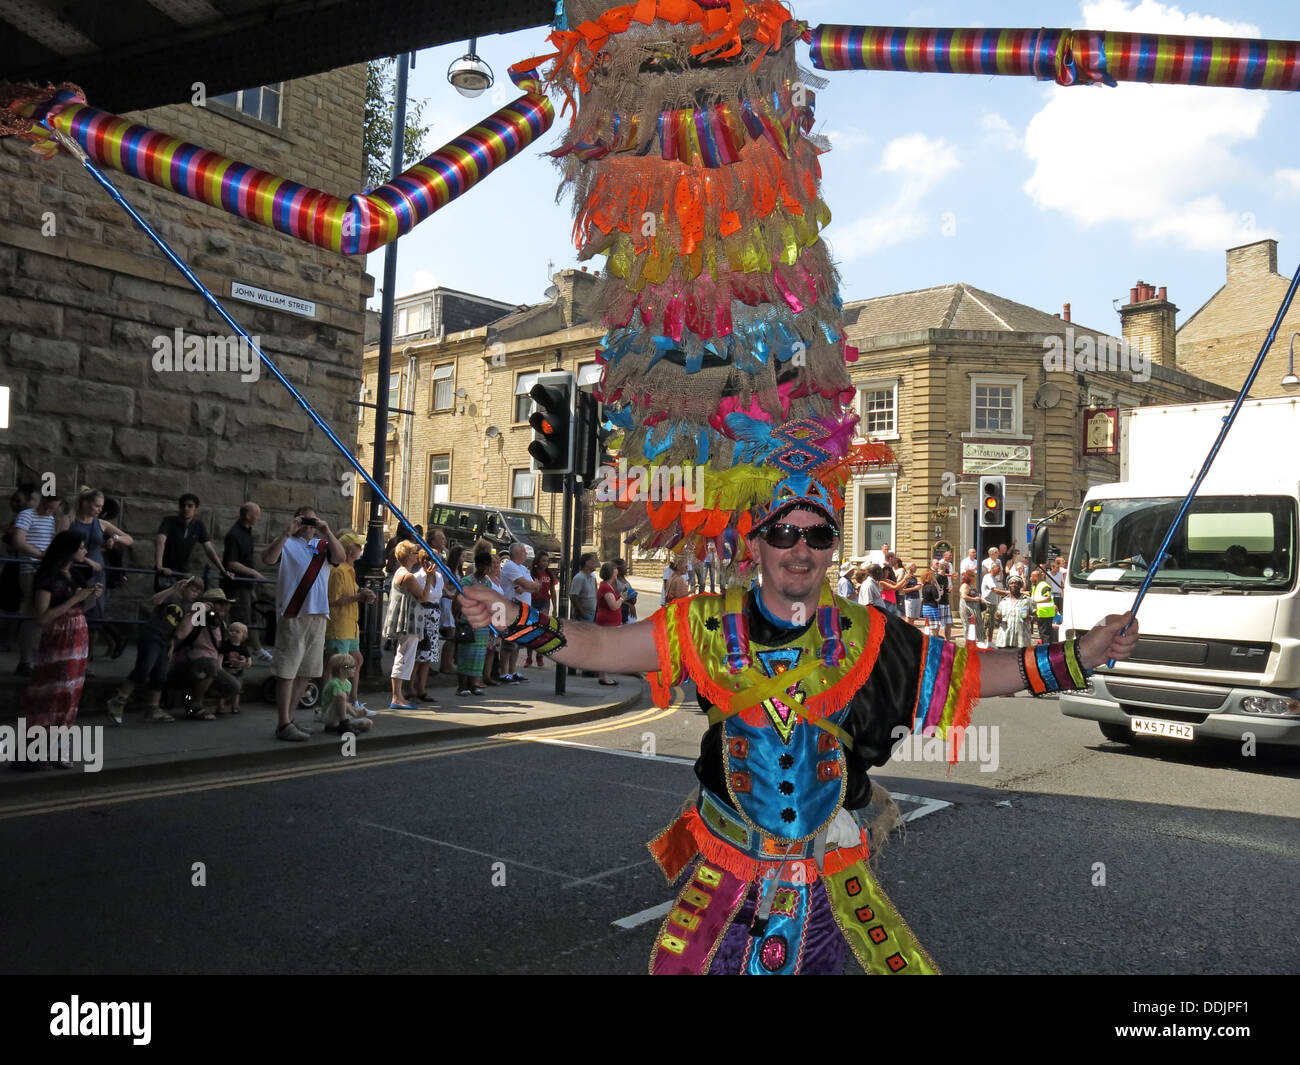 Danseuse en costume sous pont de chemin de fer de Huddersfield Carnival parade 2013 fête de rue Africains des Caraïbes Banque D'Images